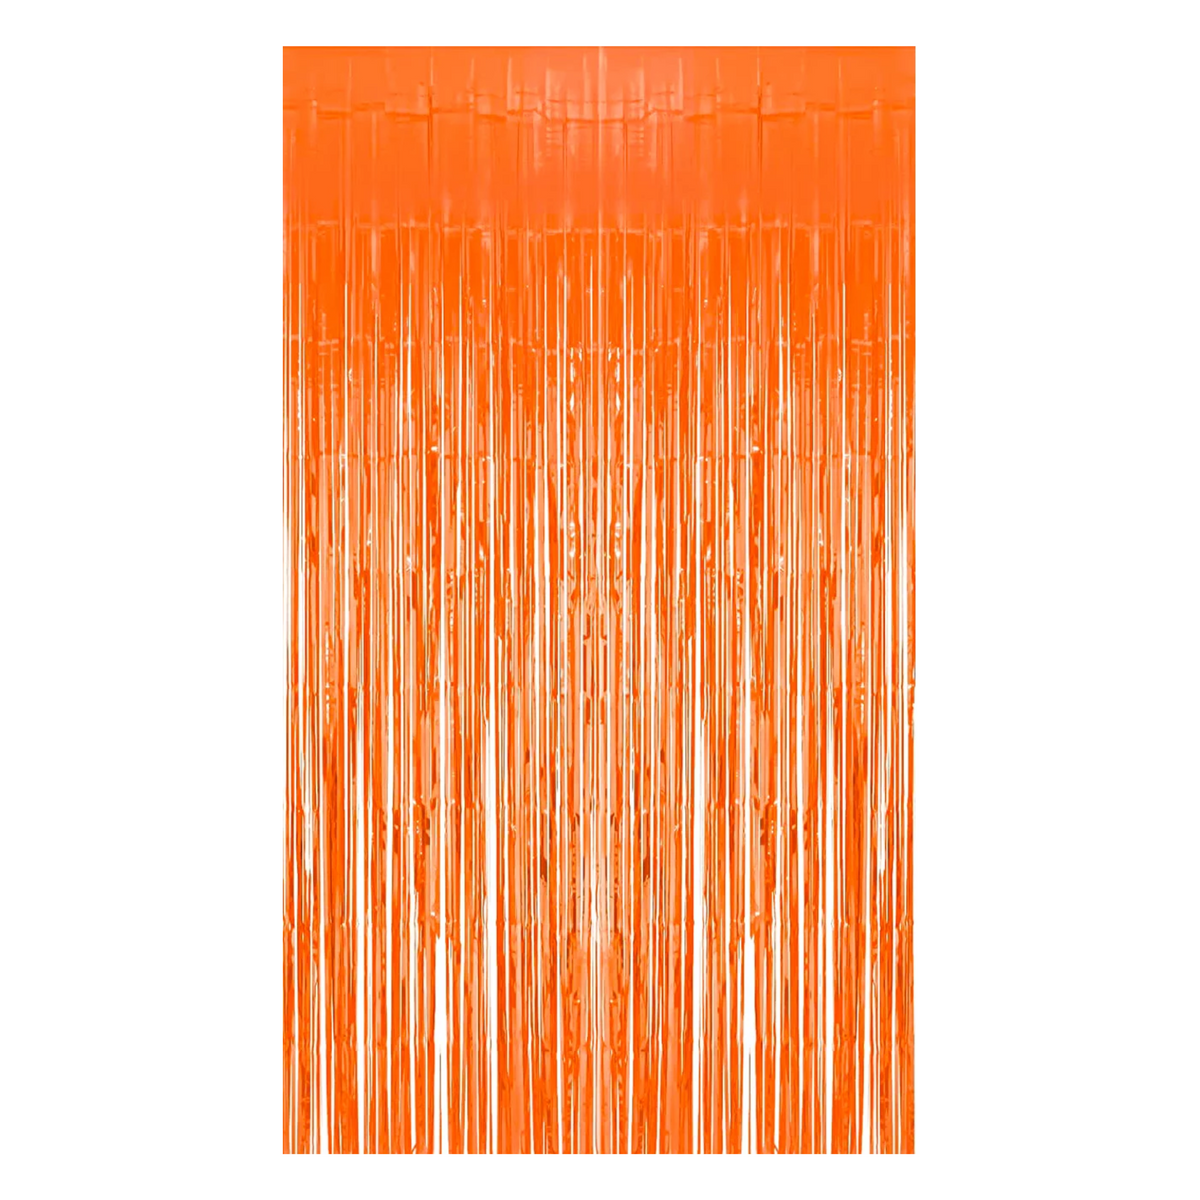 Pastel Curtain Orange 3ft x 6ft - 1 Ct.